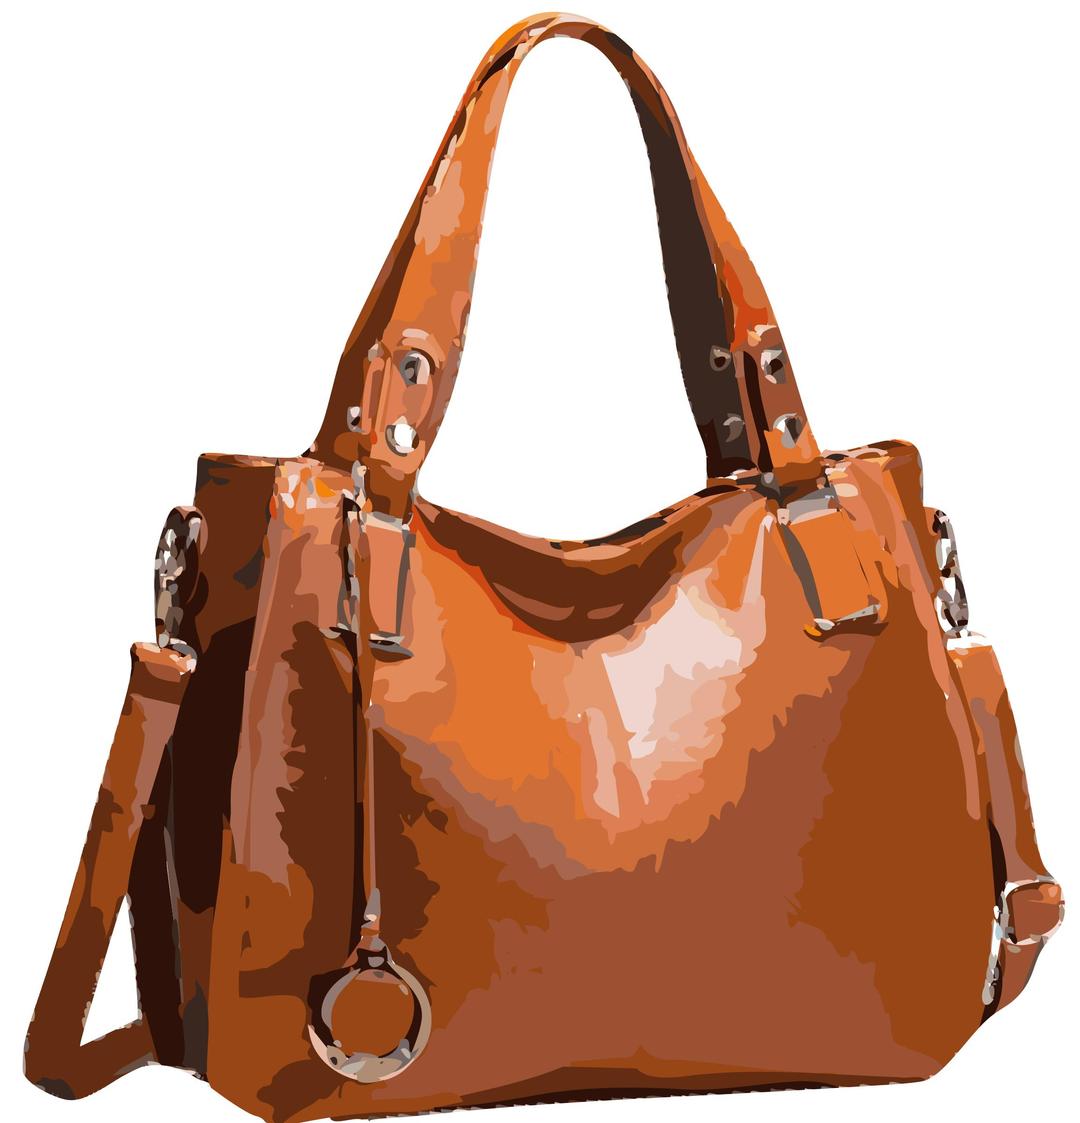 Orange handbag all leather no logo, tidied up png transparent